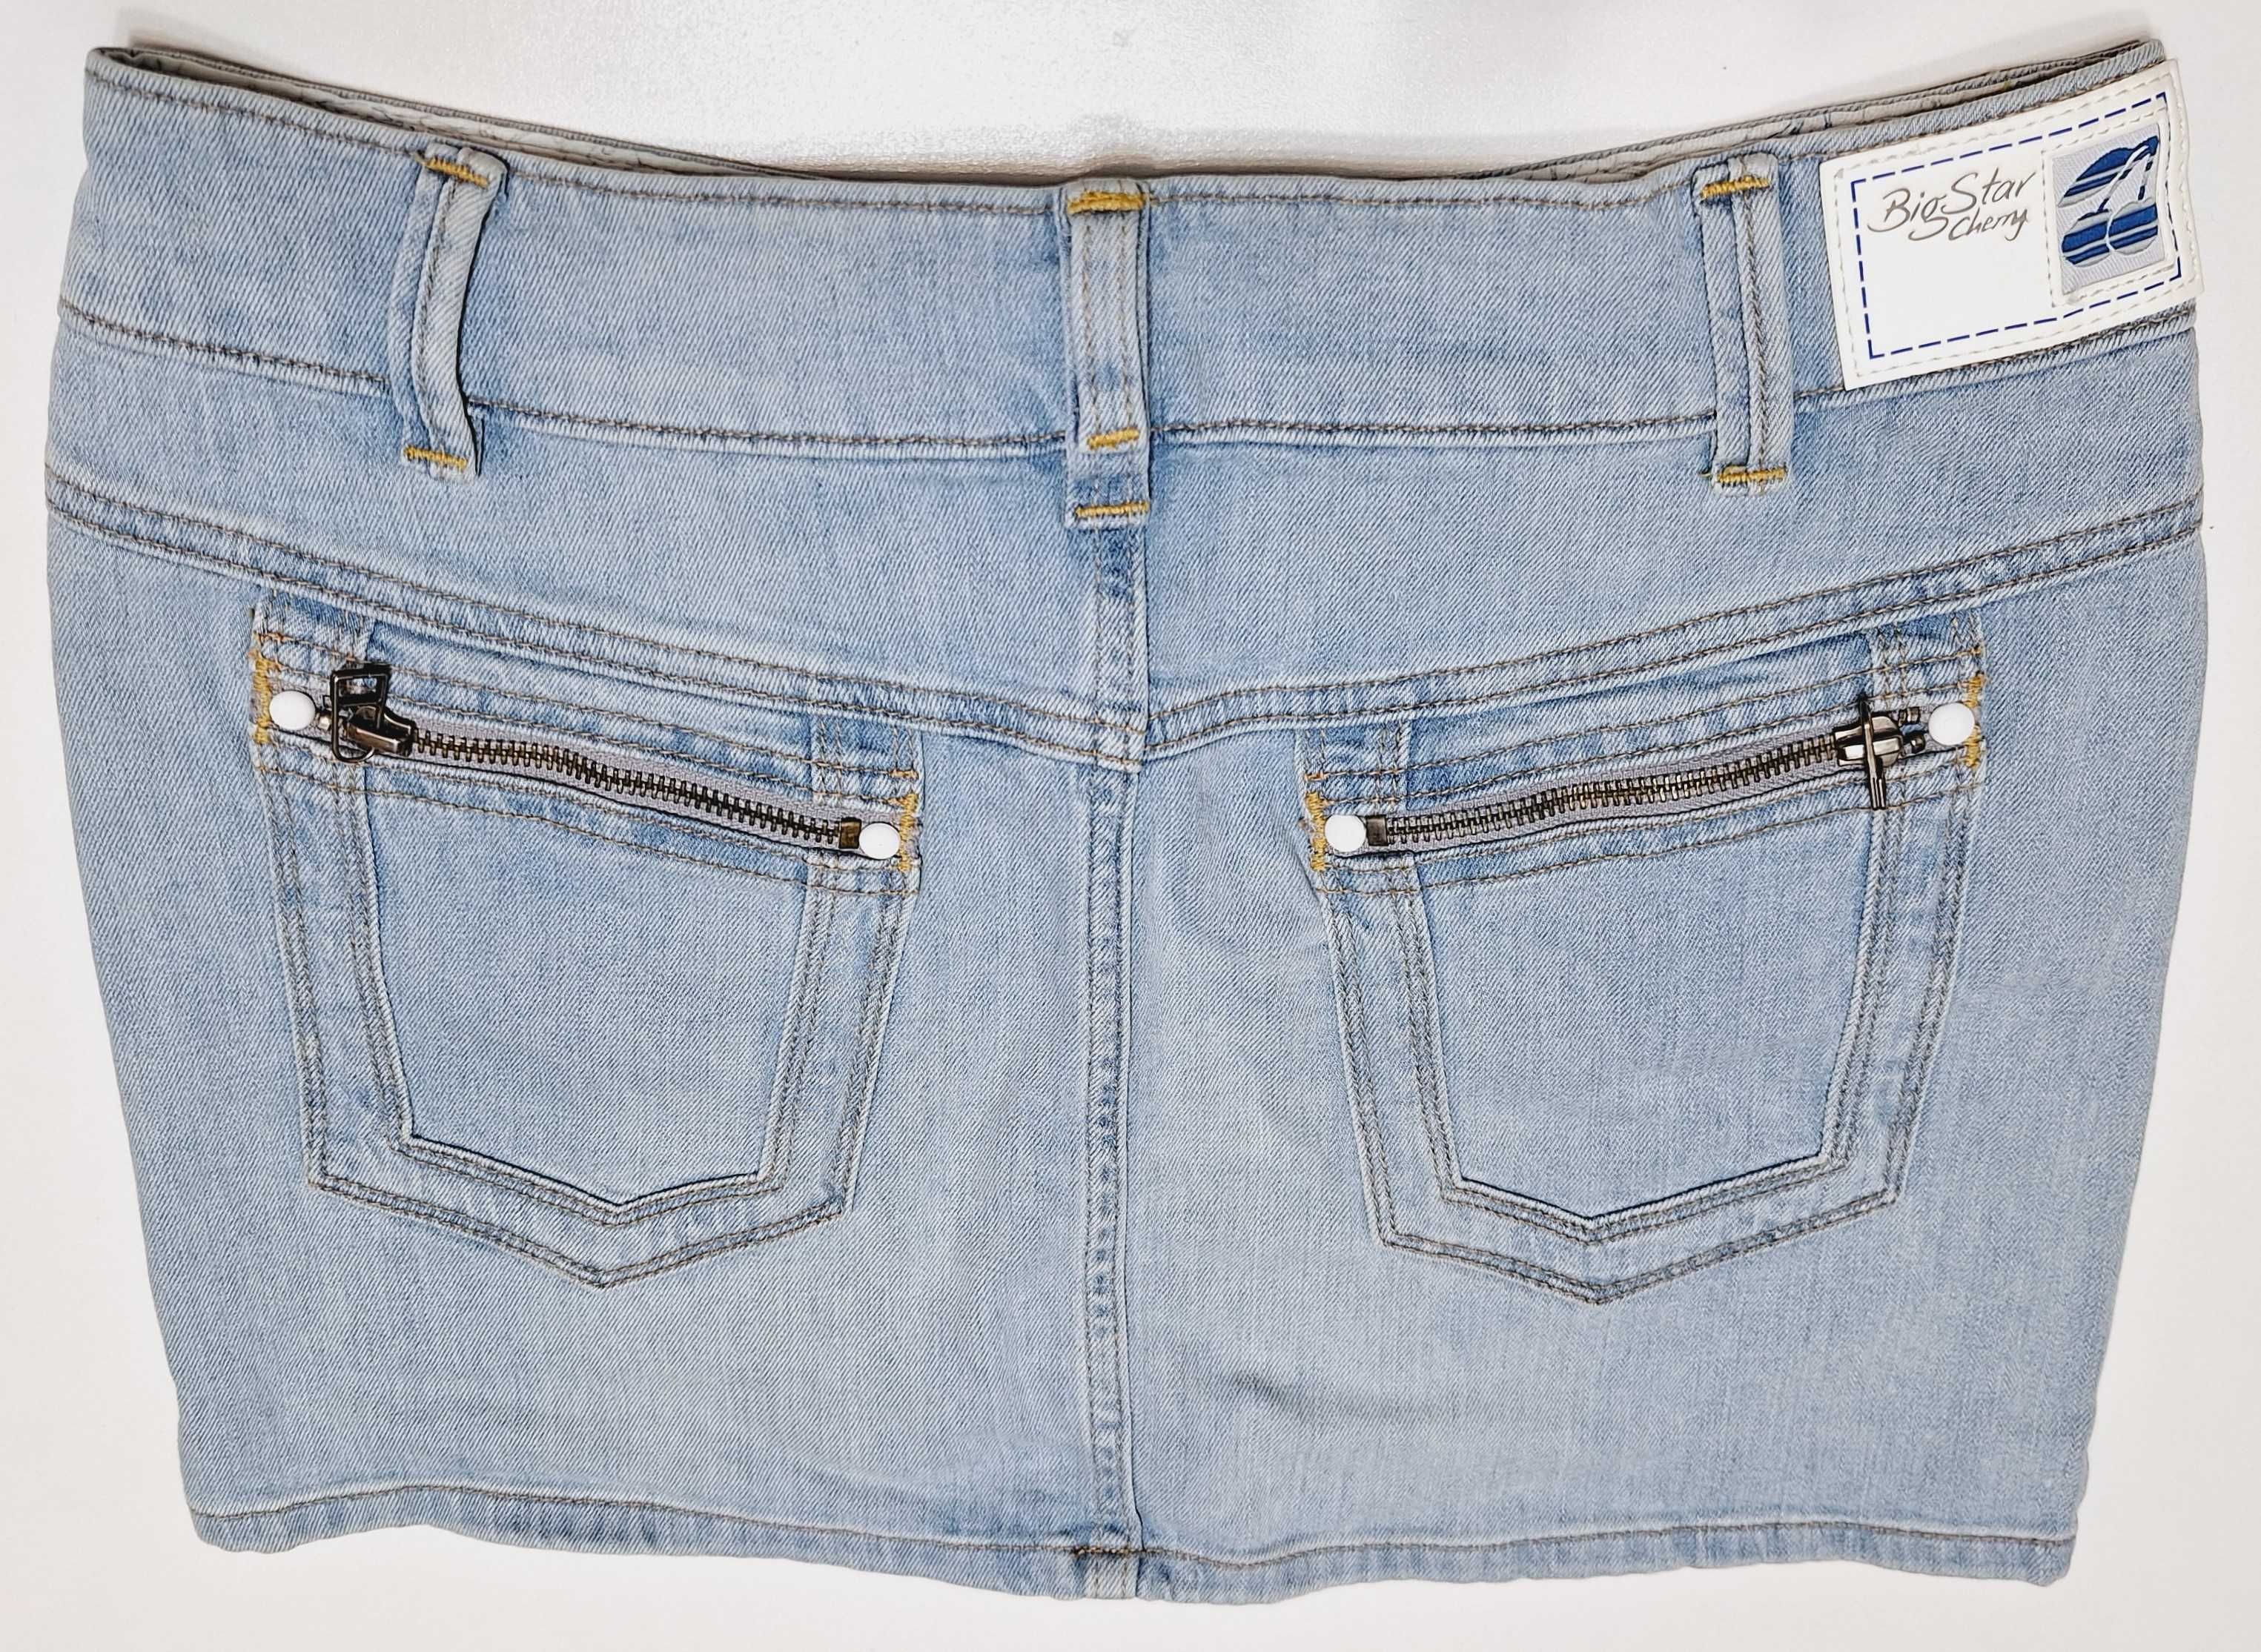 Spódnica jeansowa firmy Big Star, kolor niebieski jasny, rozmiar M